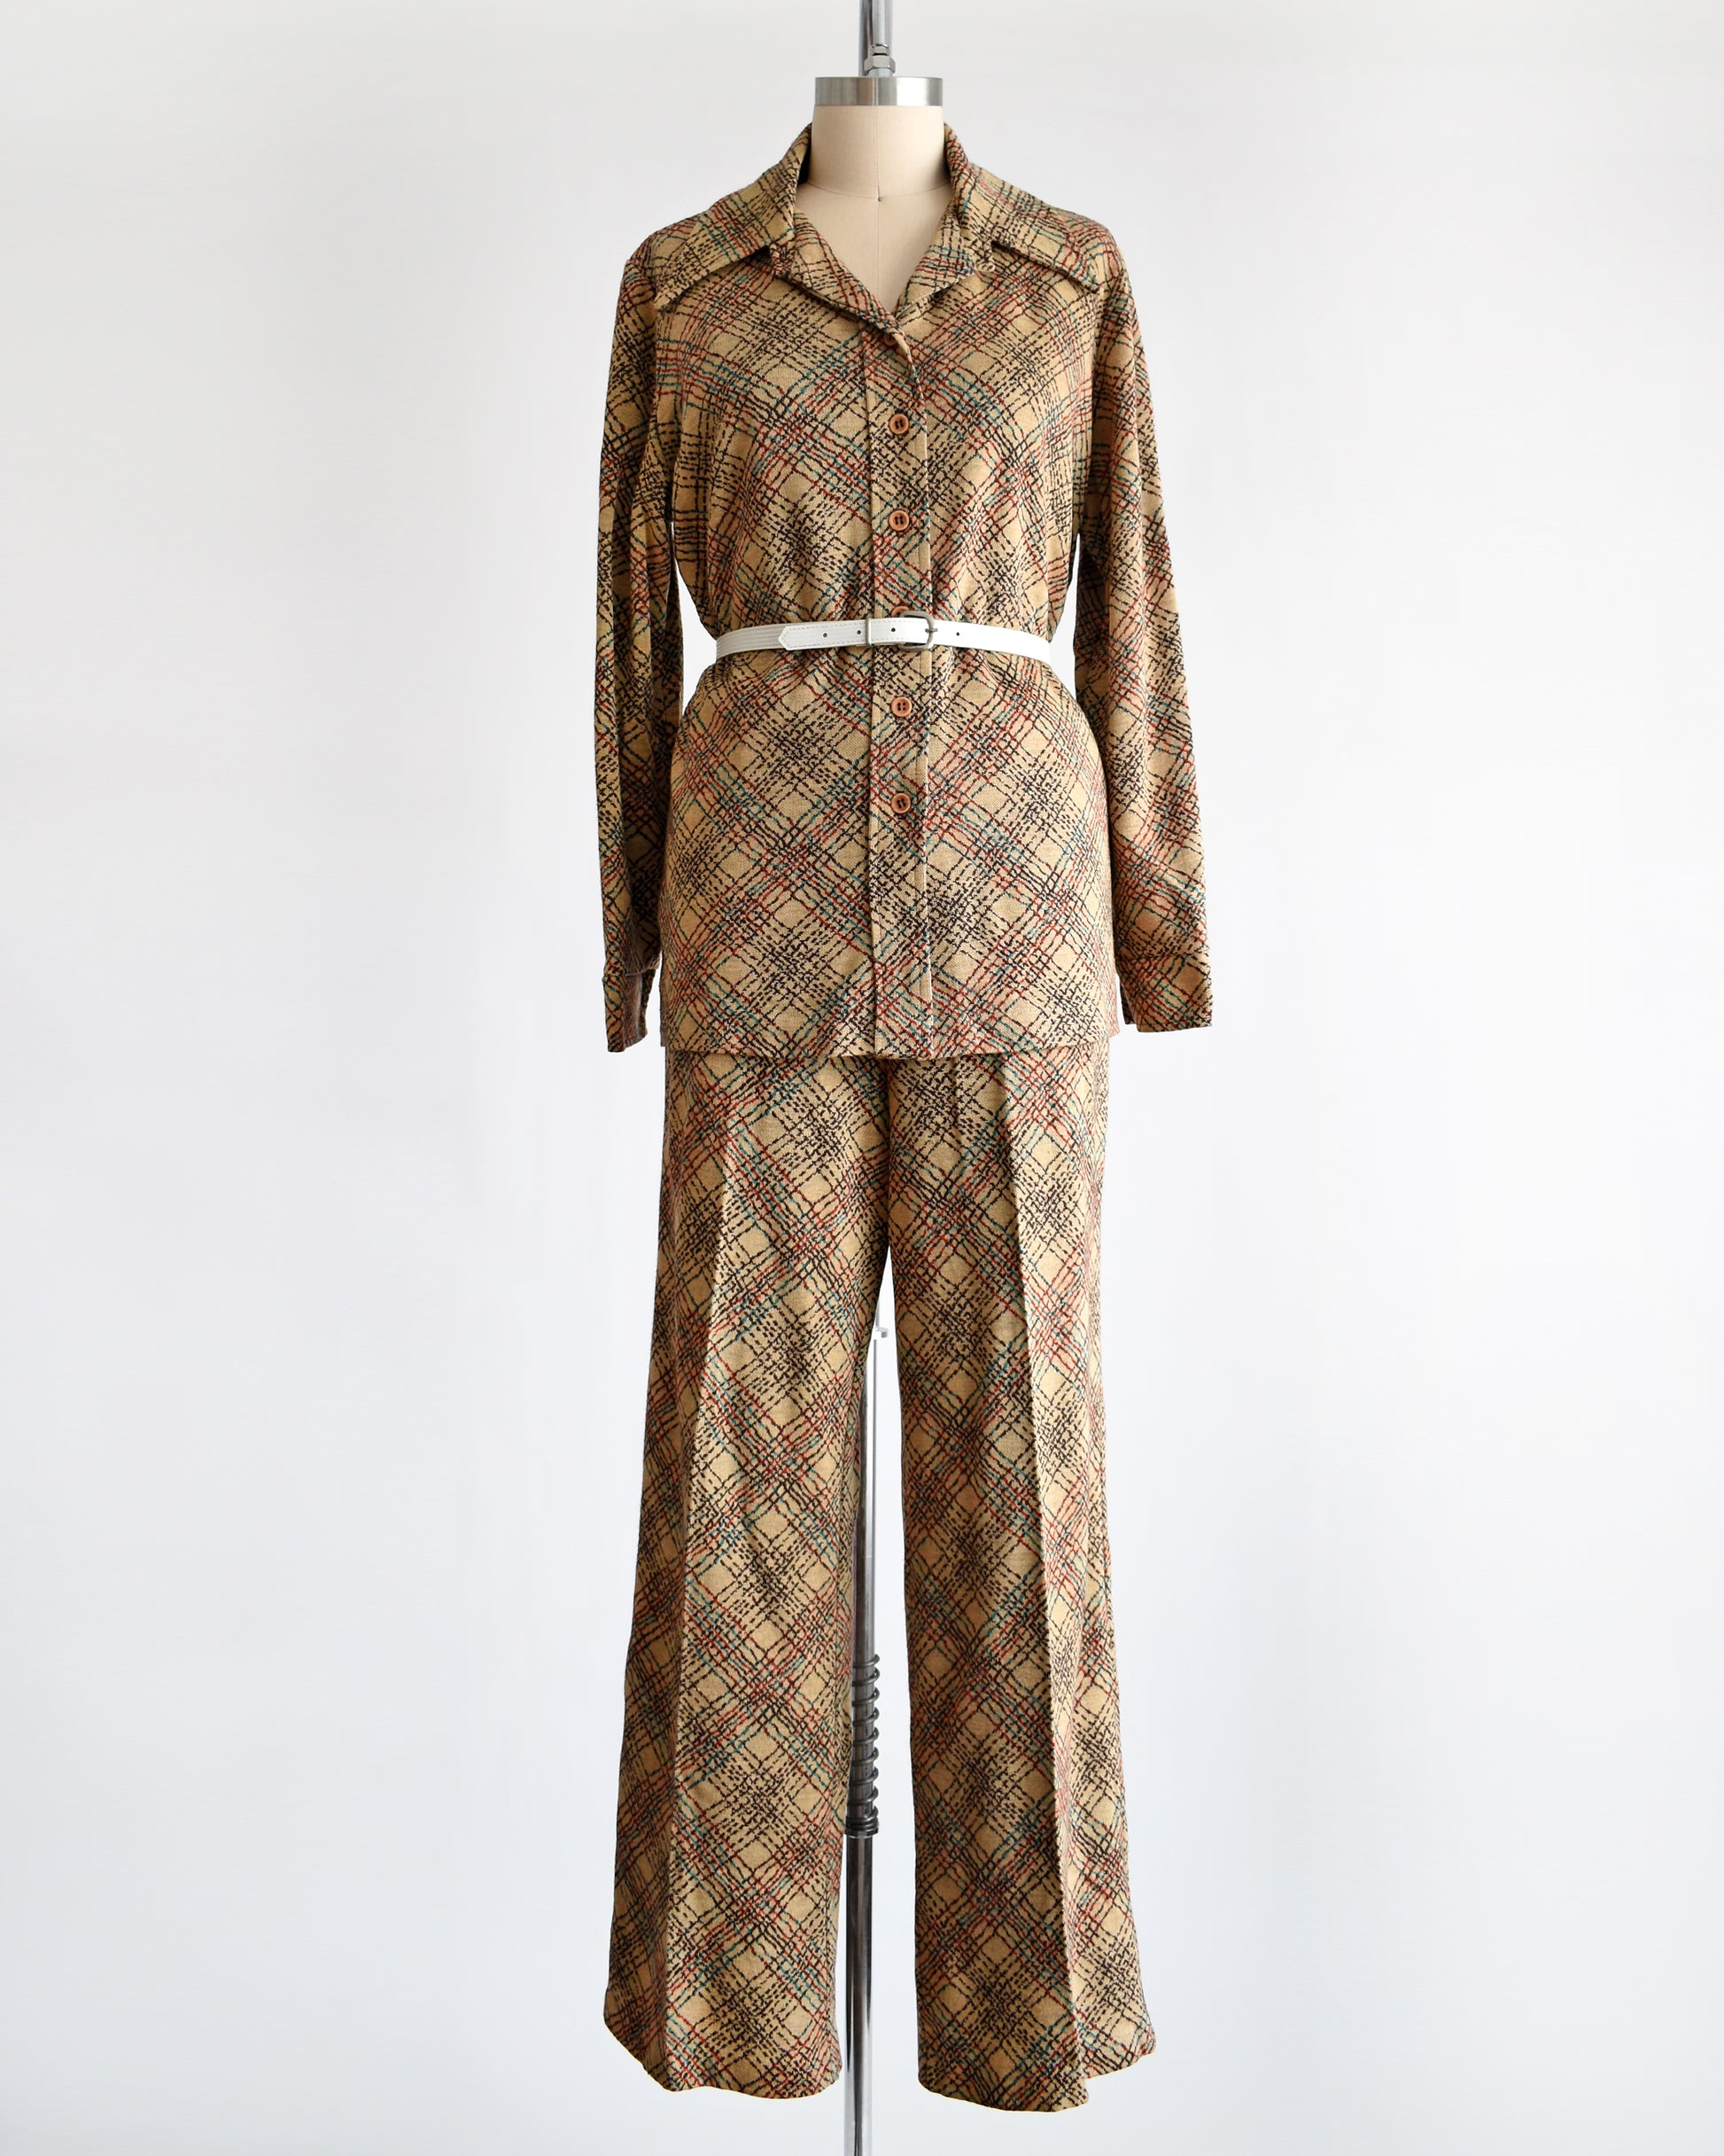 a vintage 1970s brown plaid pantsuit with a decorative white belt